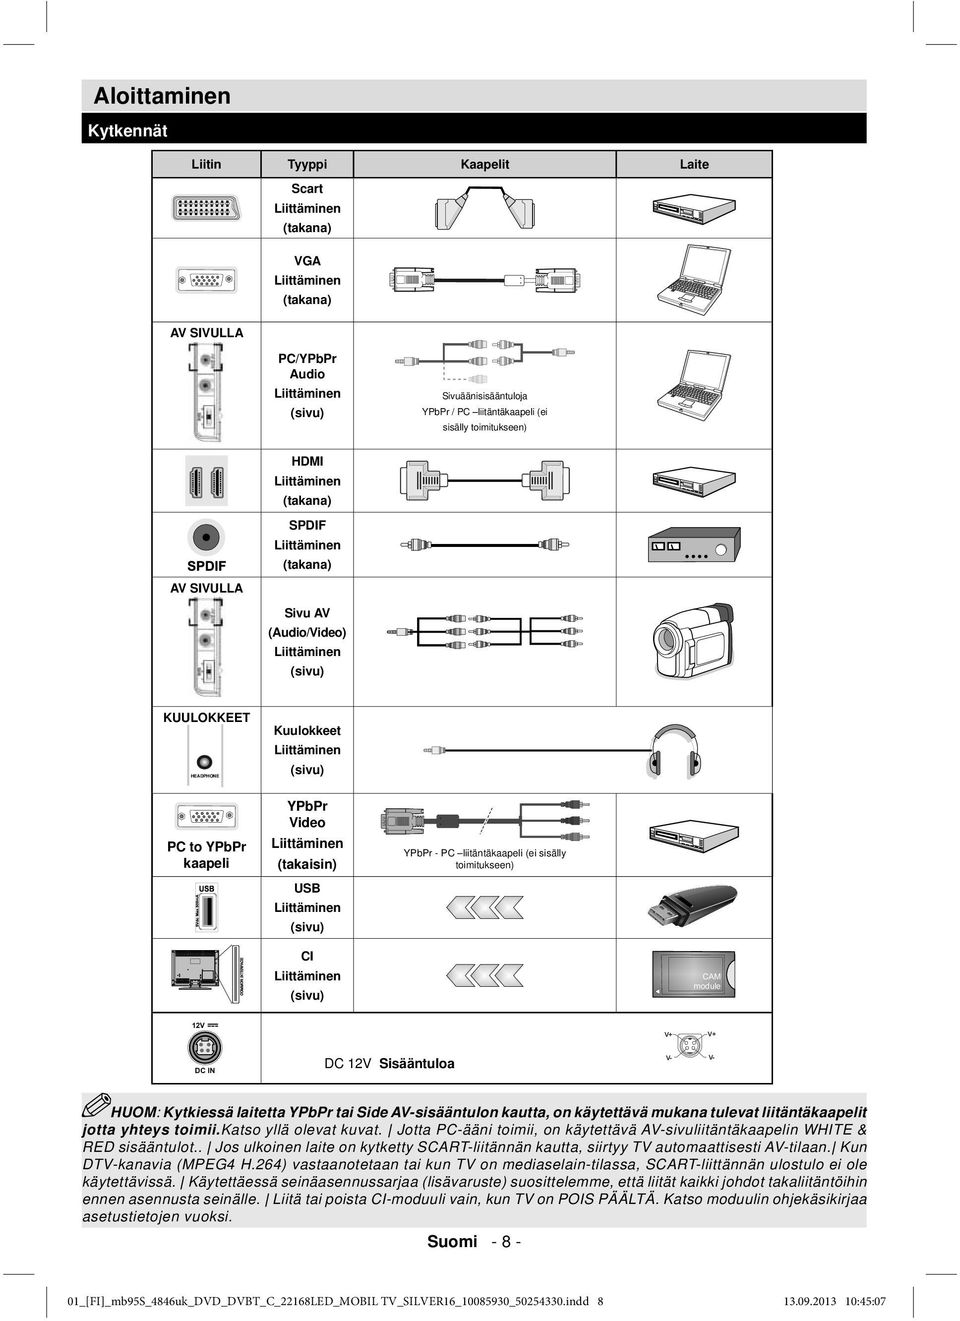 kaapeli YPbPr Video Liittäminen (takaisin) USB Liittäminen (sivu) YPbPr - PC liitäntäkaapeli (ei sisälly toimitukseen) CI Liittäminen (sivu) V+ V+ DC 12V Sisääntuloa V- V- HUOM: Kytkiessä laitetta